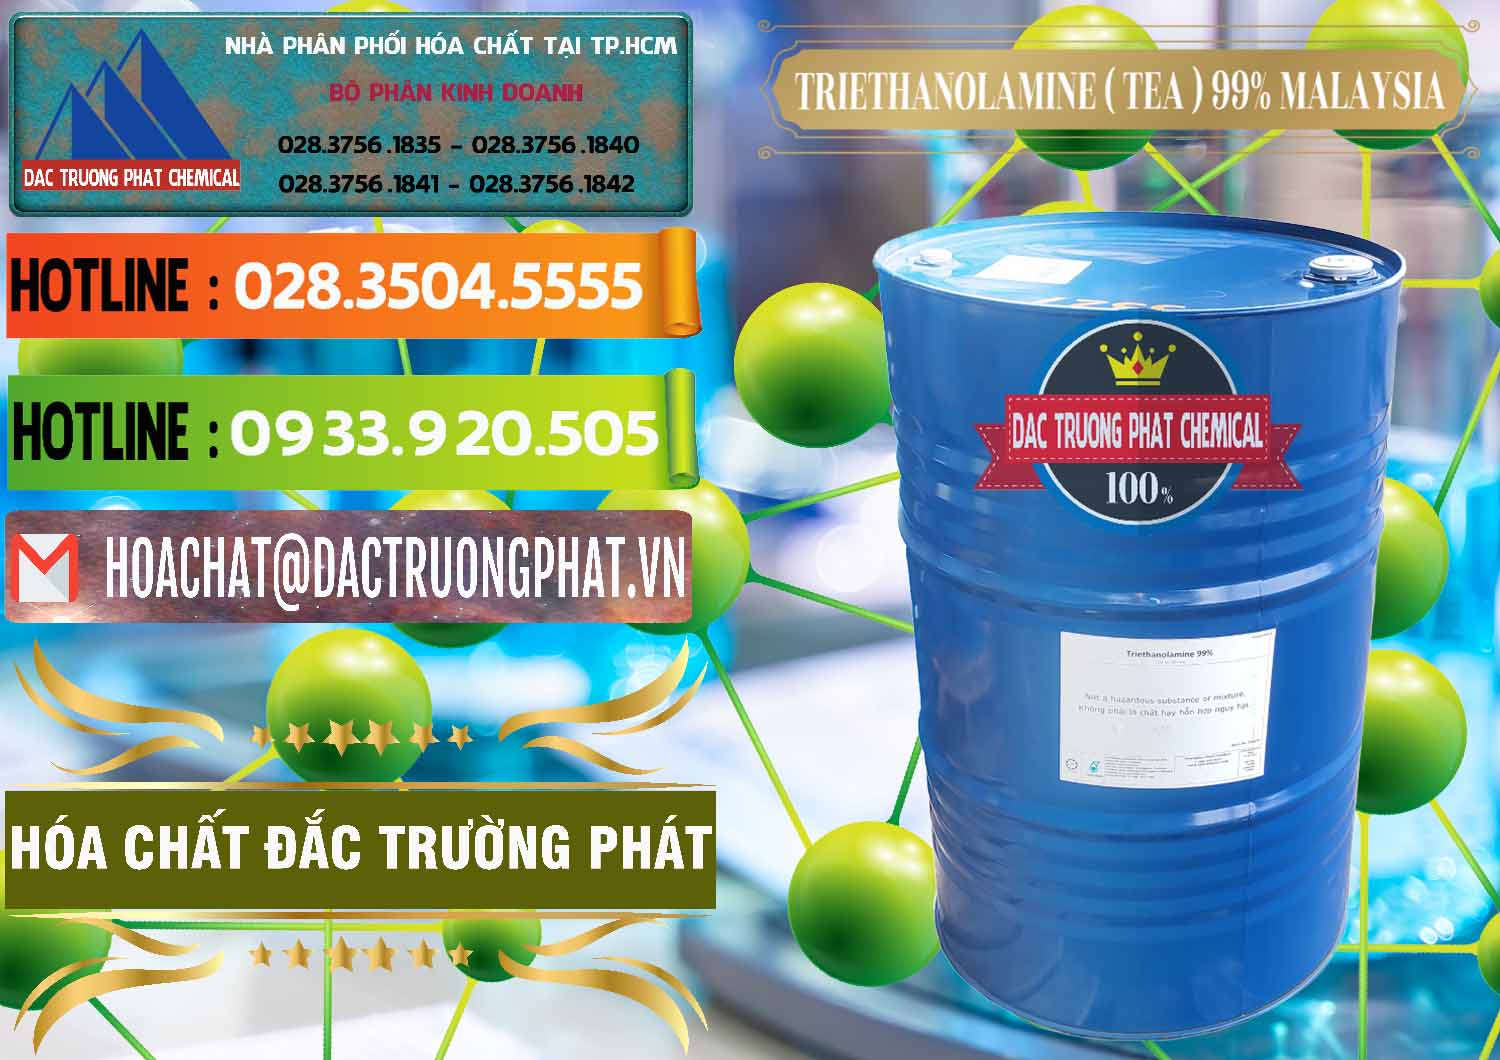 Cty cung cấp - bán TEA - Triethanolamine 99% Mã Lai Malaysia - 0323 - Nơi phân phối và cung ứng hóa chất tại TP.HCM - cungcaphoachat.com.vn